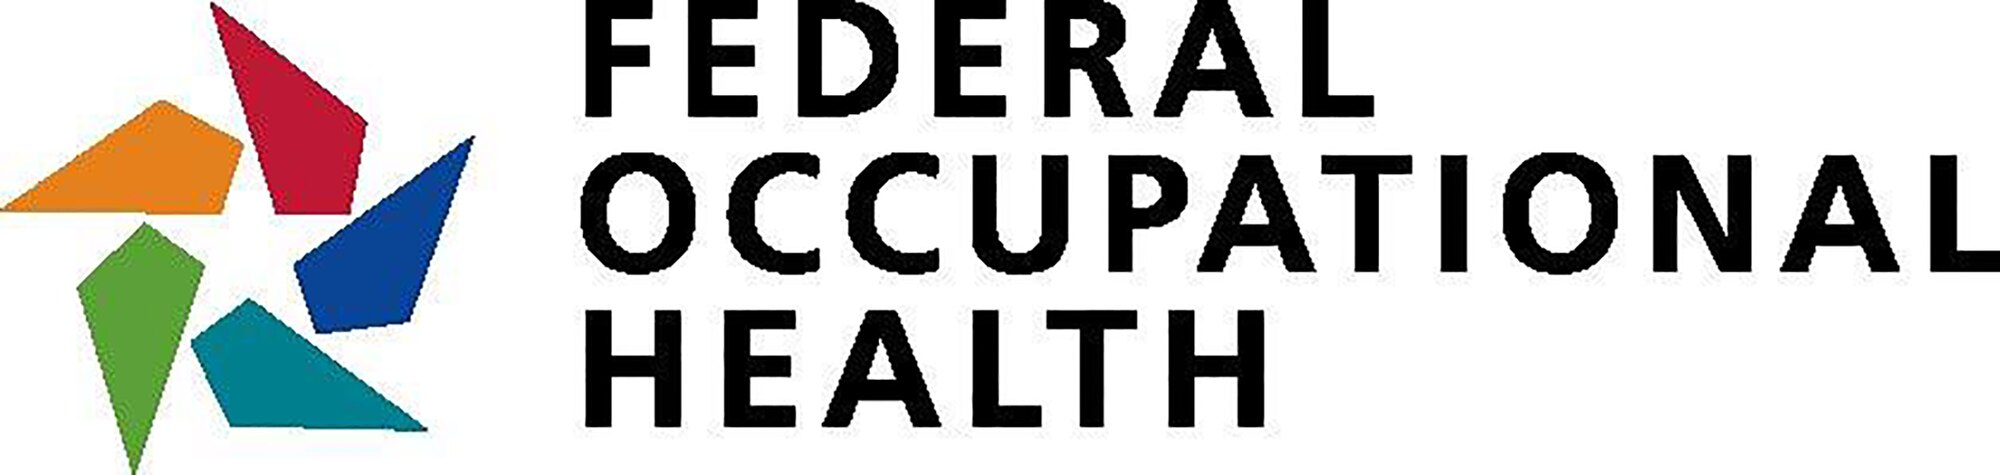 Federal Occupational Health 